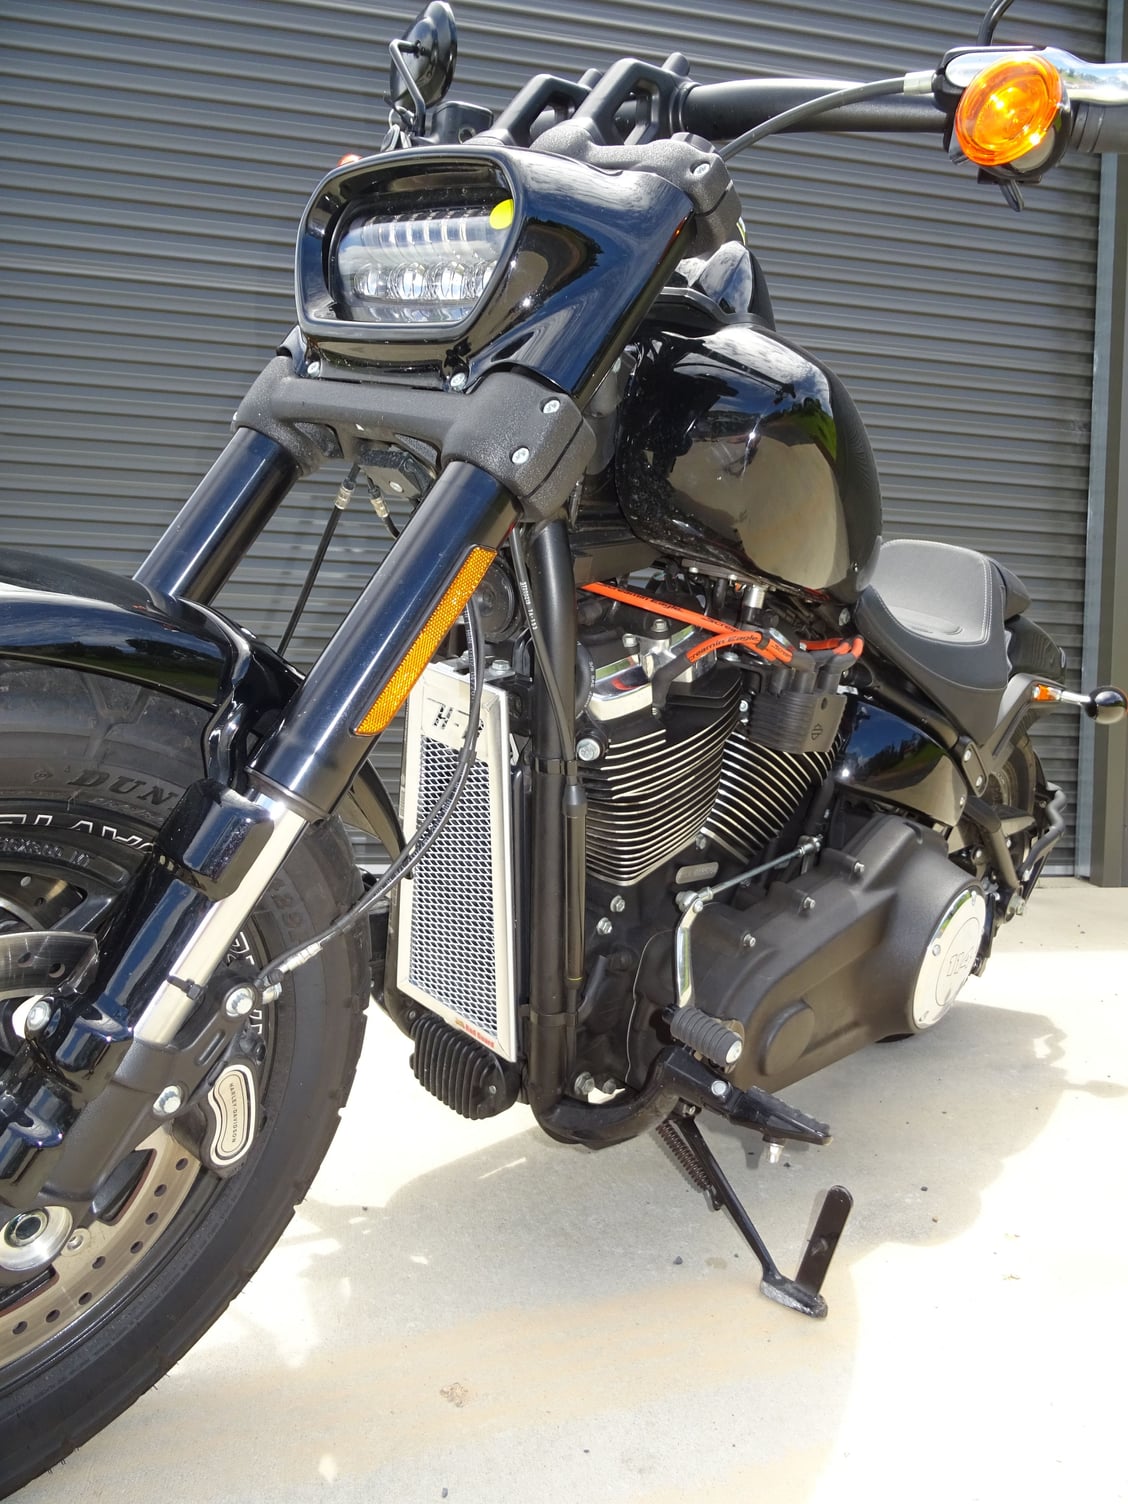 Oil cooler behind front wheel - Harley Davidson Forums